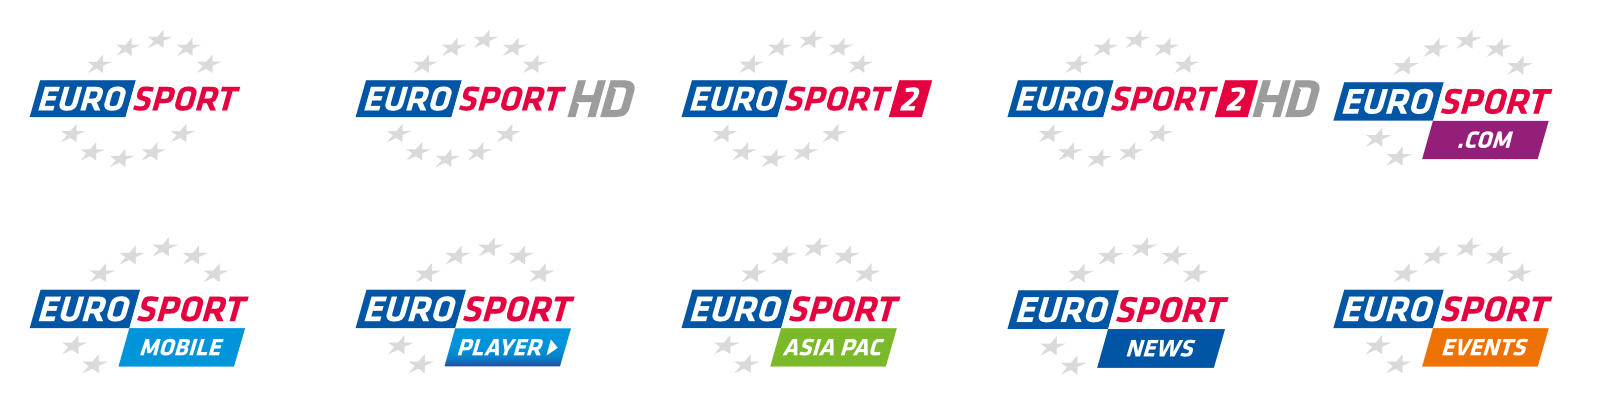 Евроспорт1 тв программа. Евроспорт логотип. Канал Евроспорт. Телеканал Евроспорт логотип.